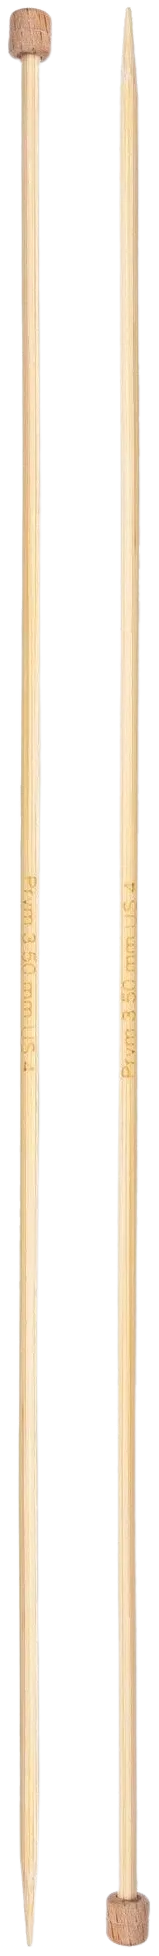 Prym neulepuikko 3,5 33cm bambu - 2